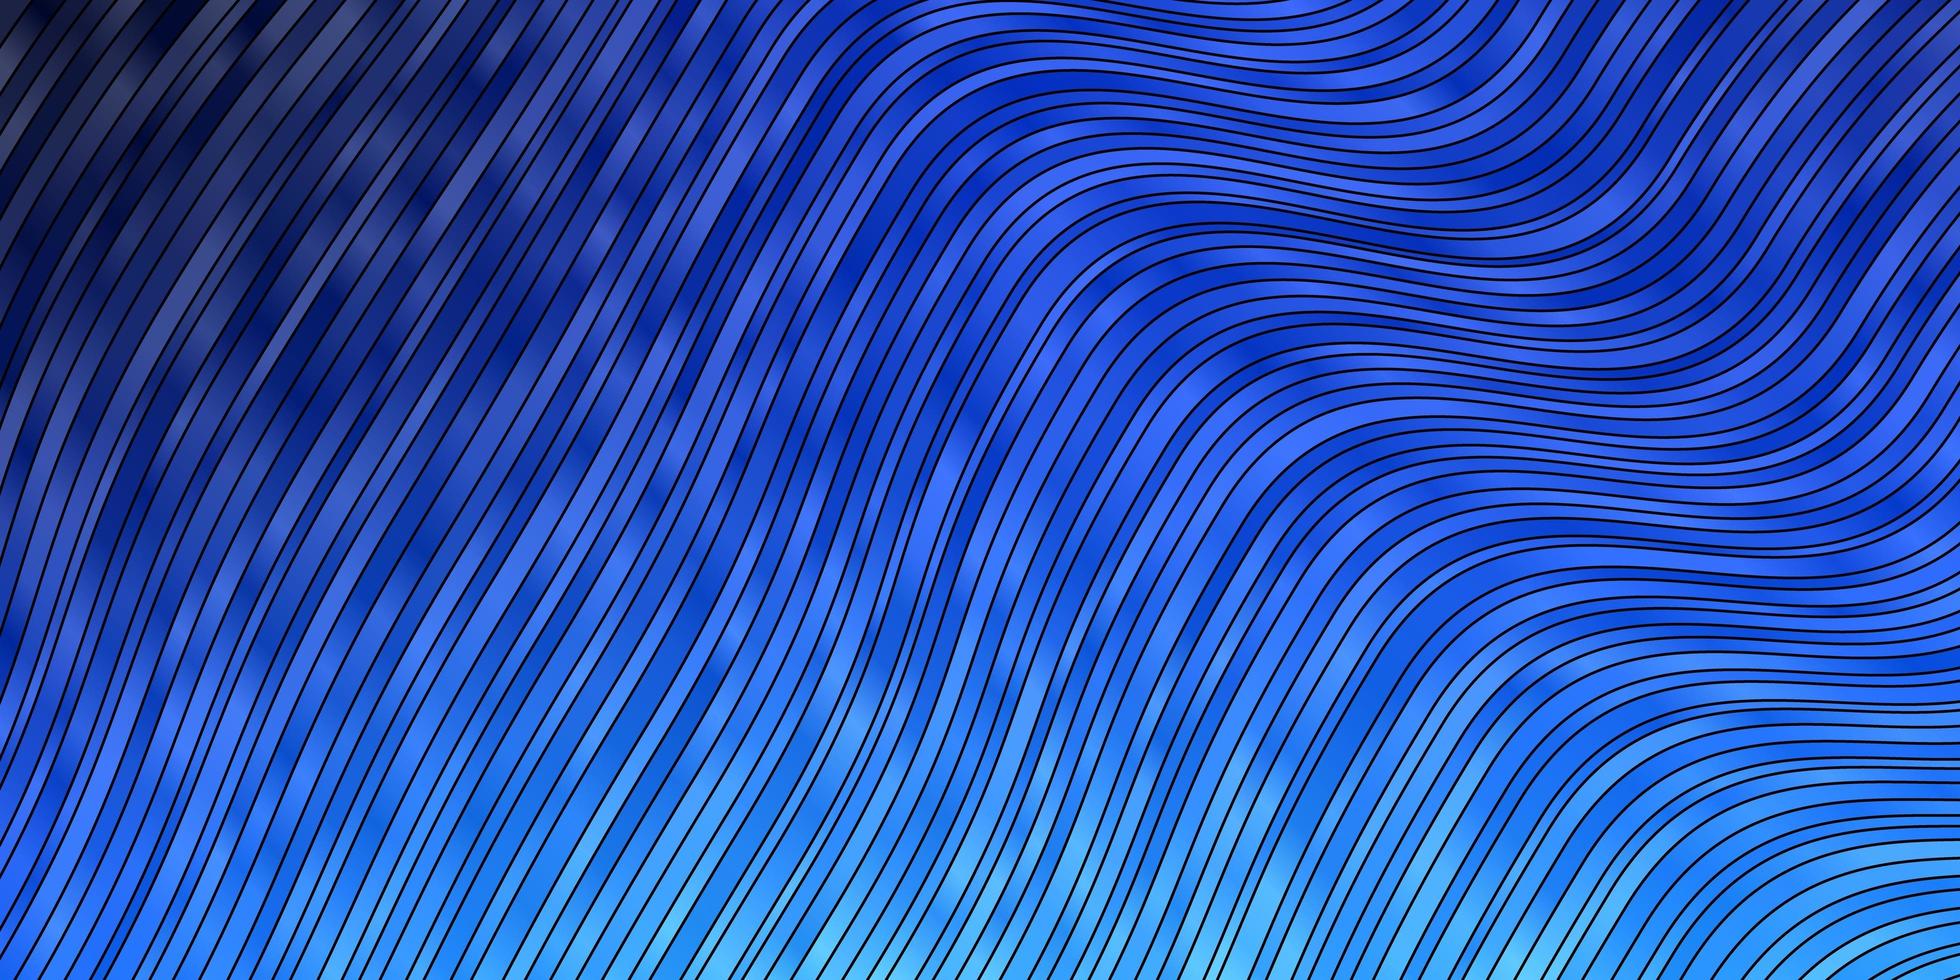 textura vector azul claro com arco circular.